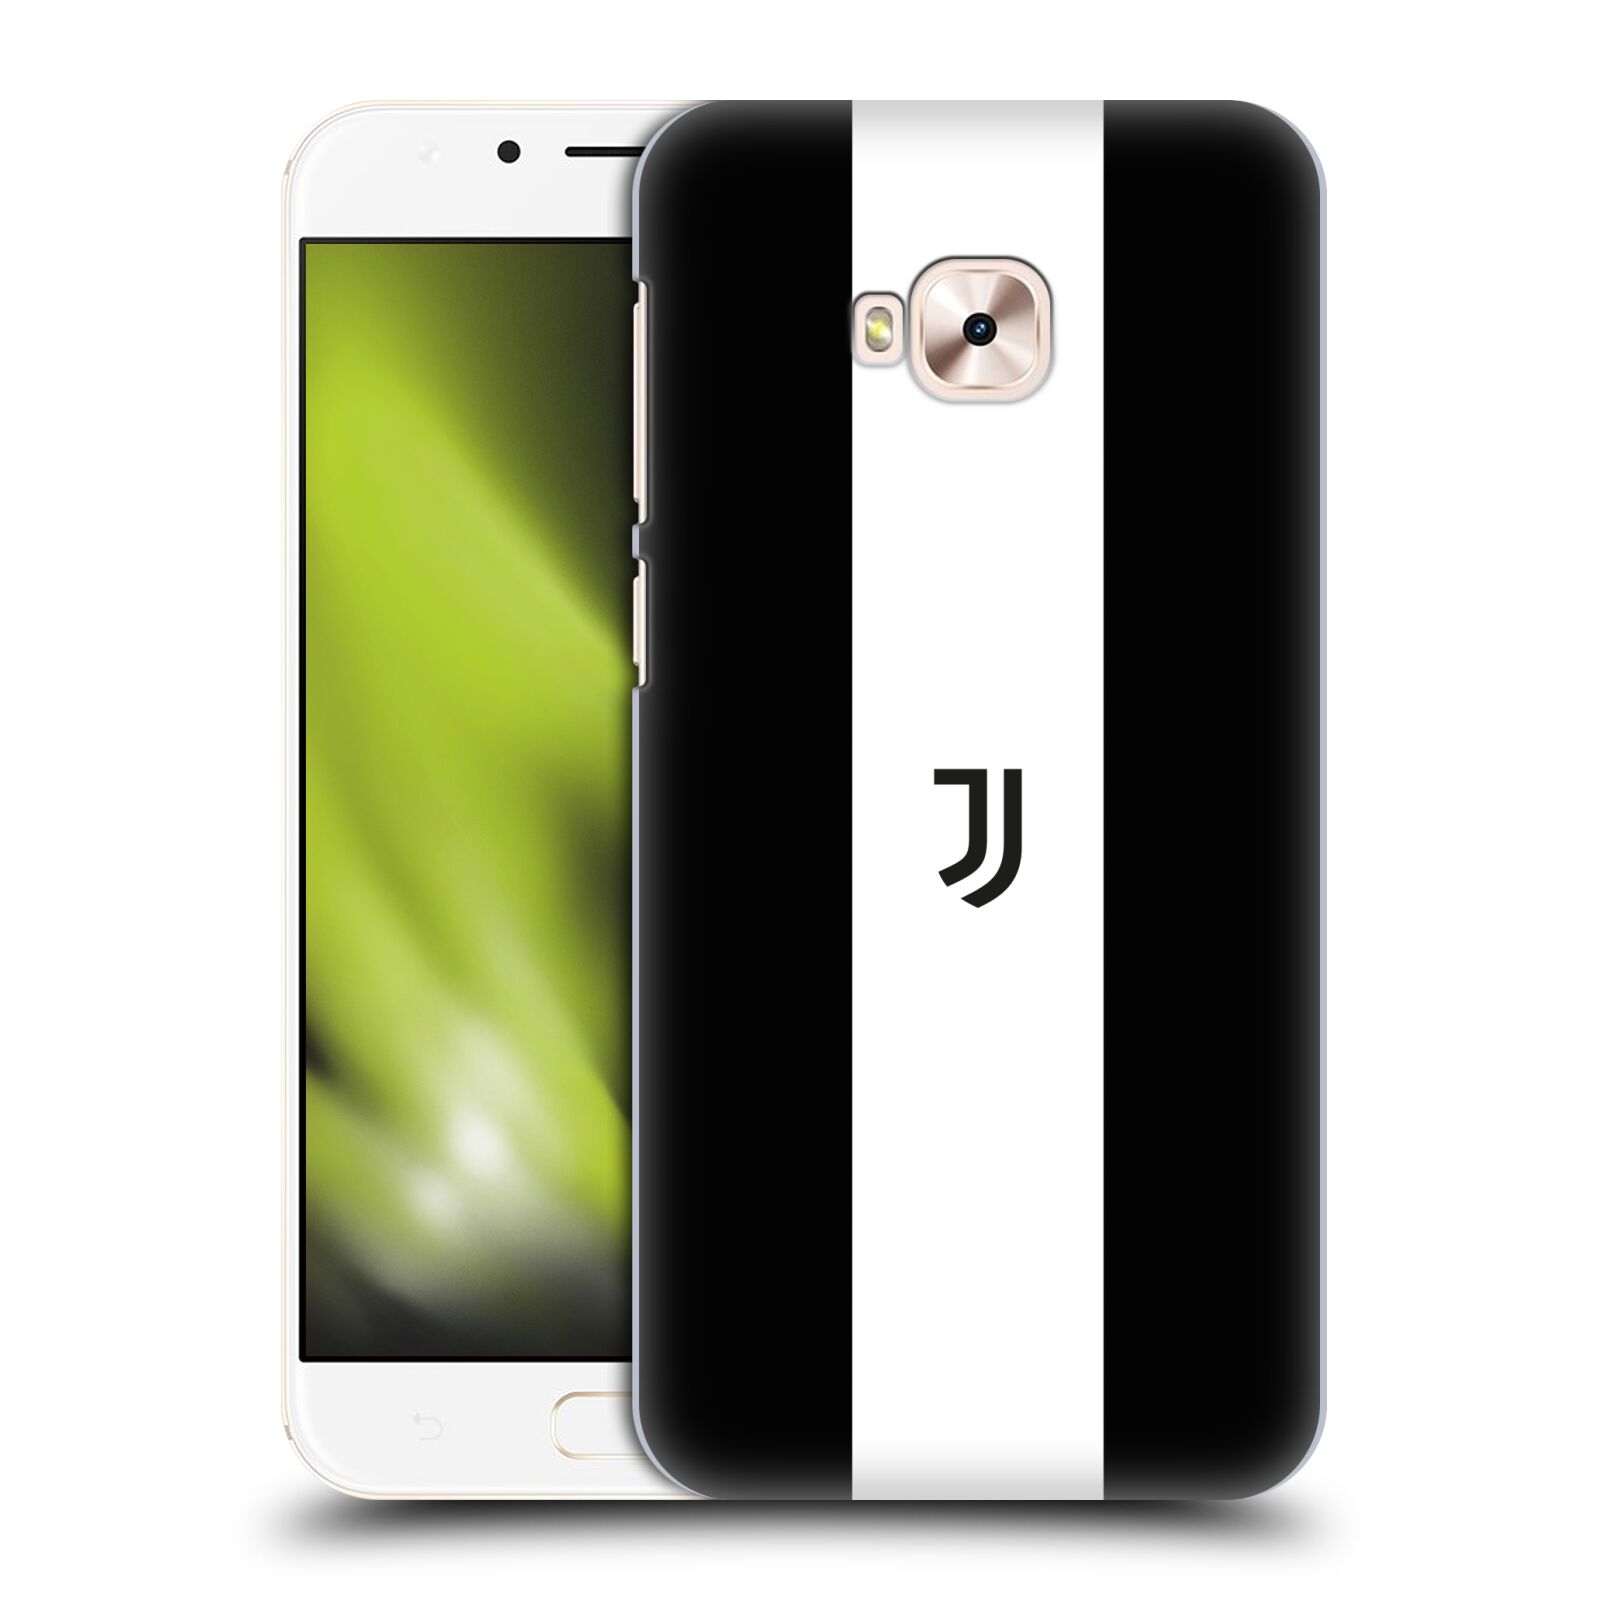 HEAD CASE plastový obal na mobil Asus Zenfone 4 Selfie Pro ZD552KL Fotbalový klub Juventus FC pruhy znak černá a bílá